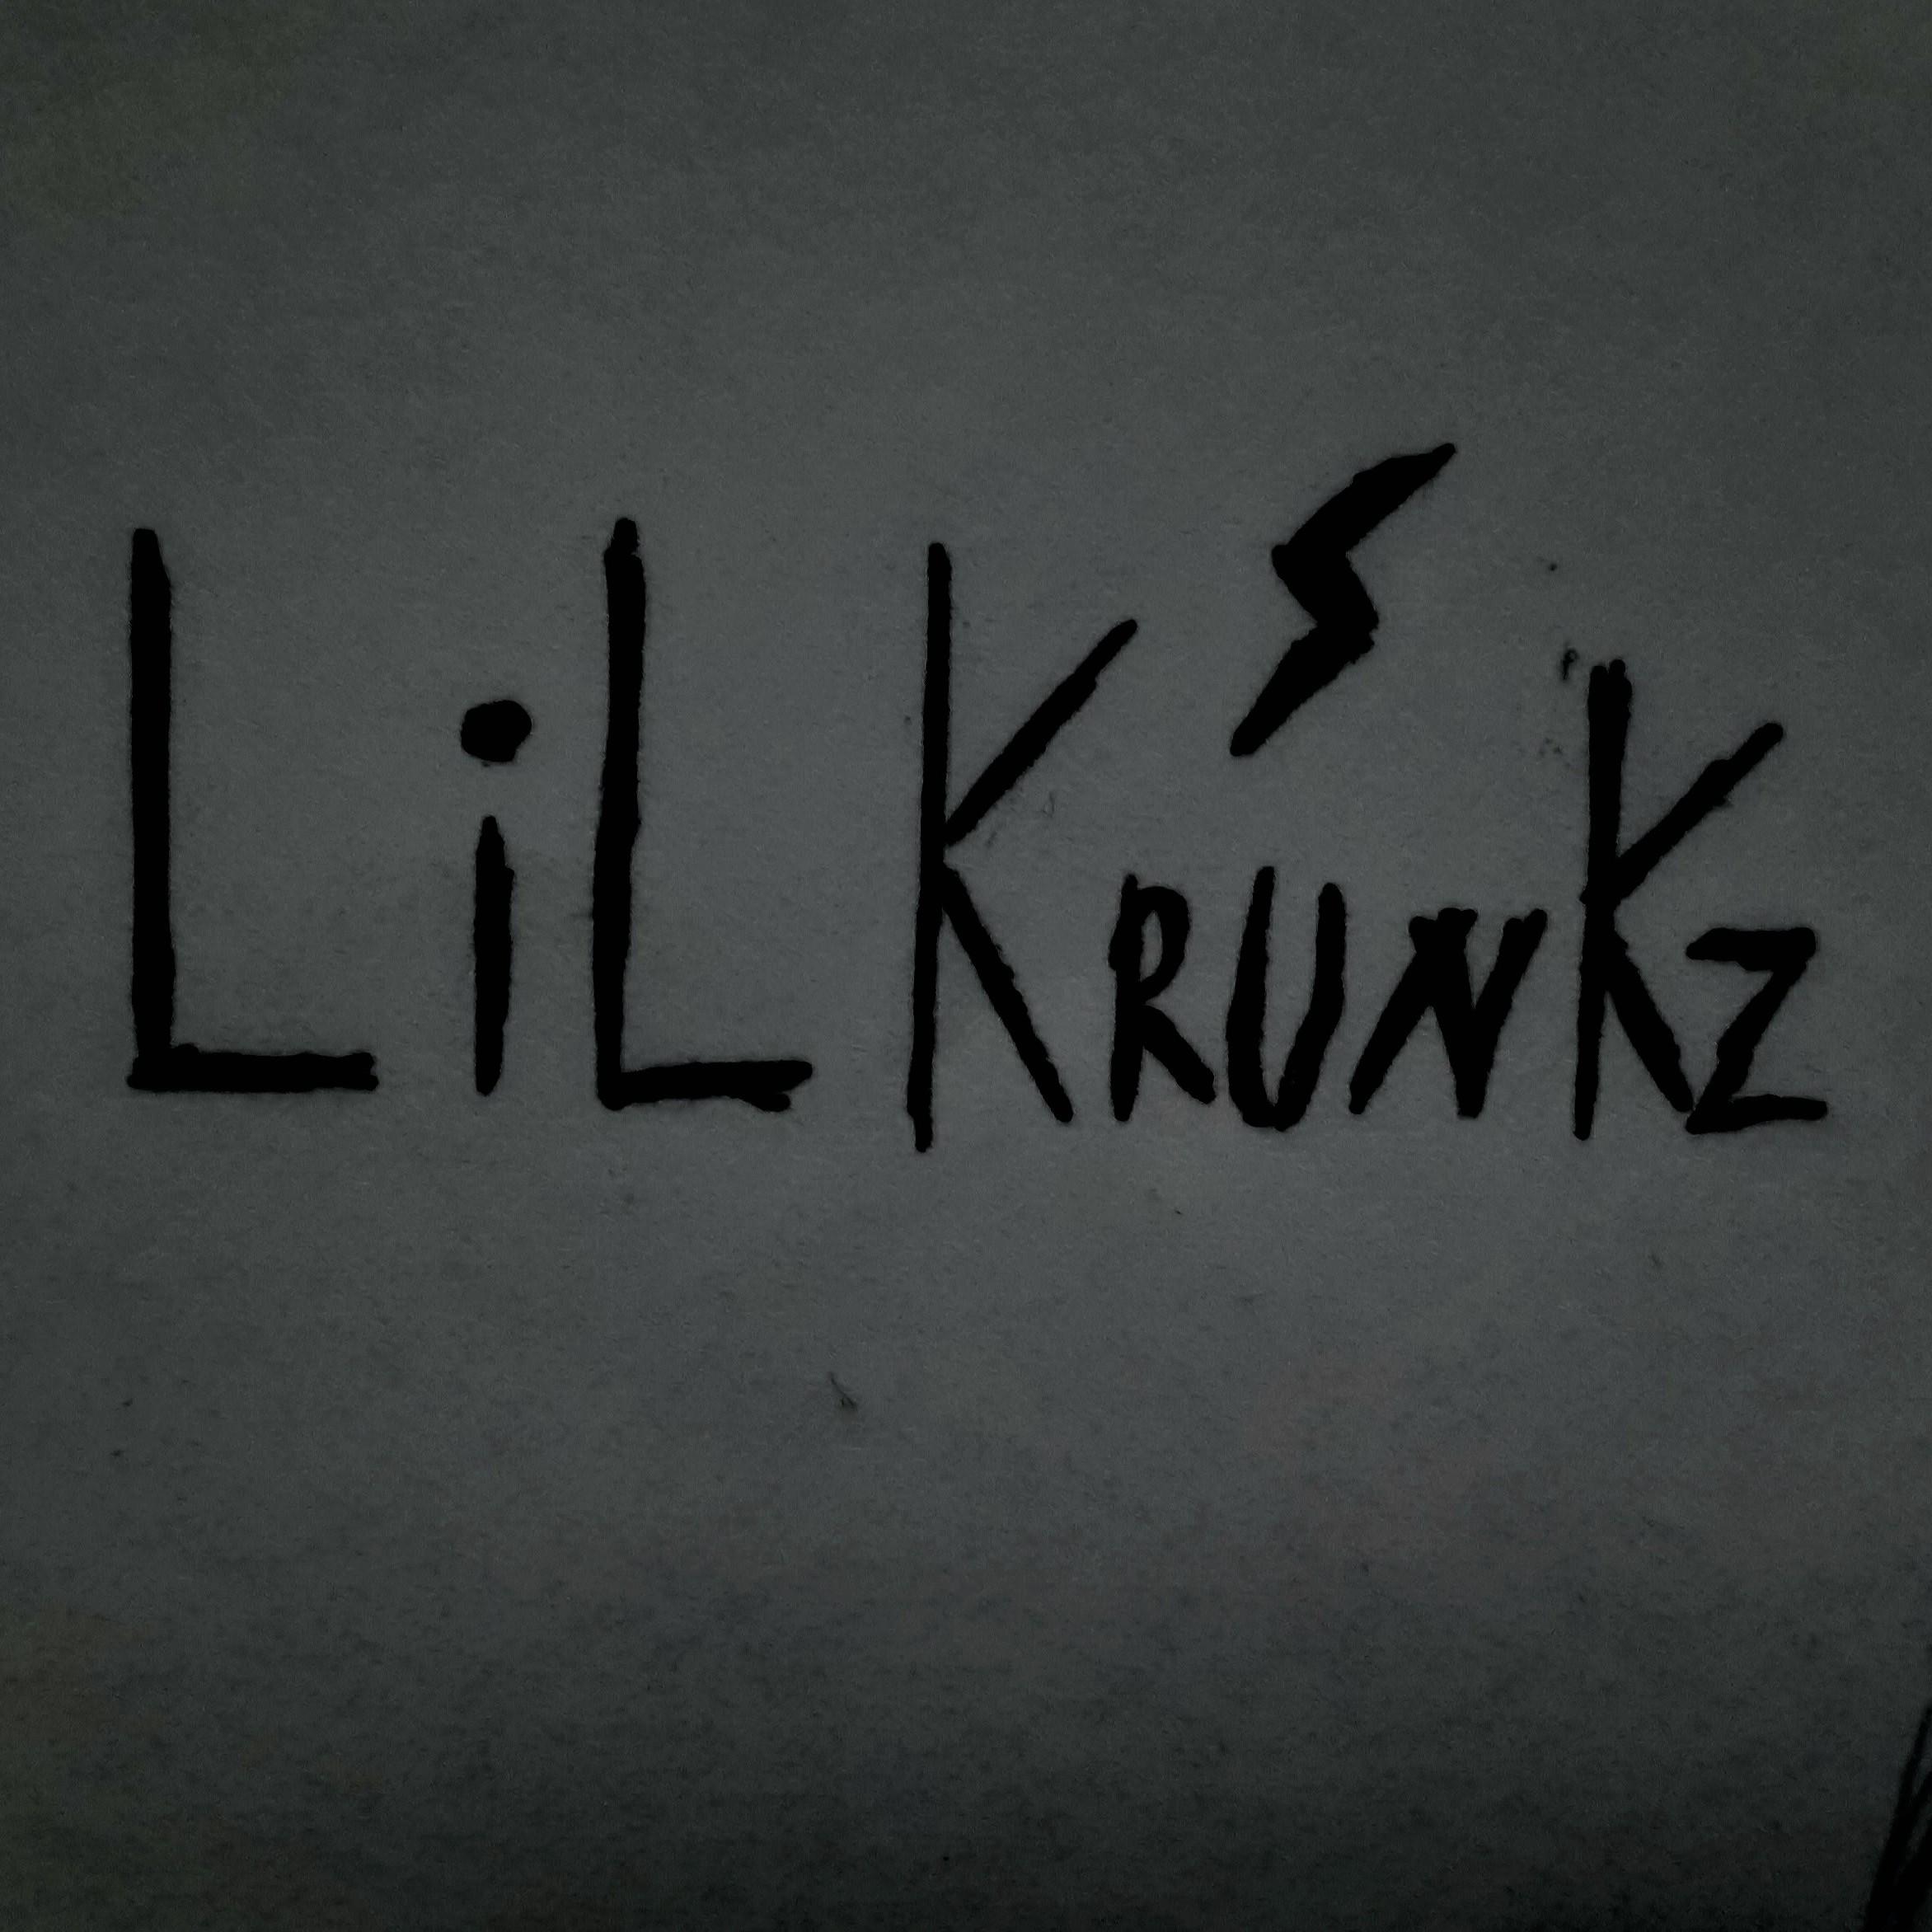 Lil Krunkz